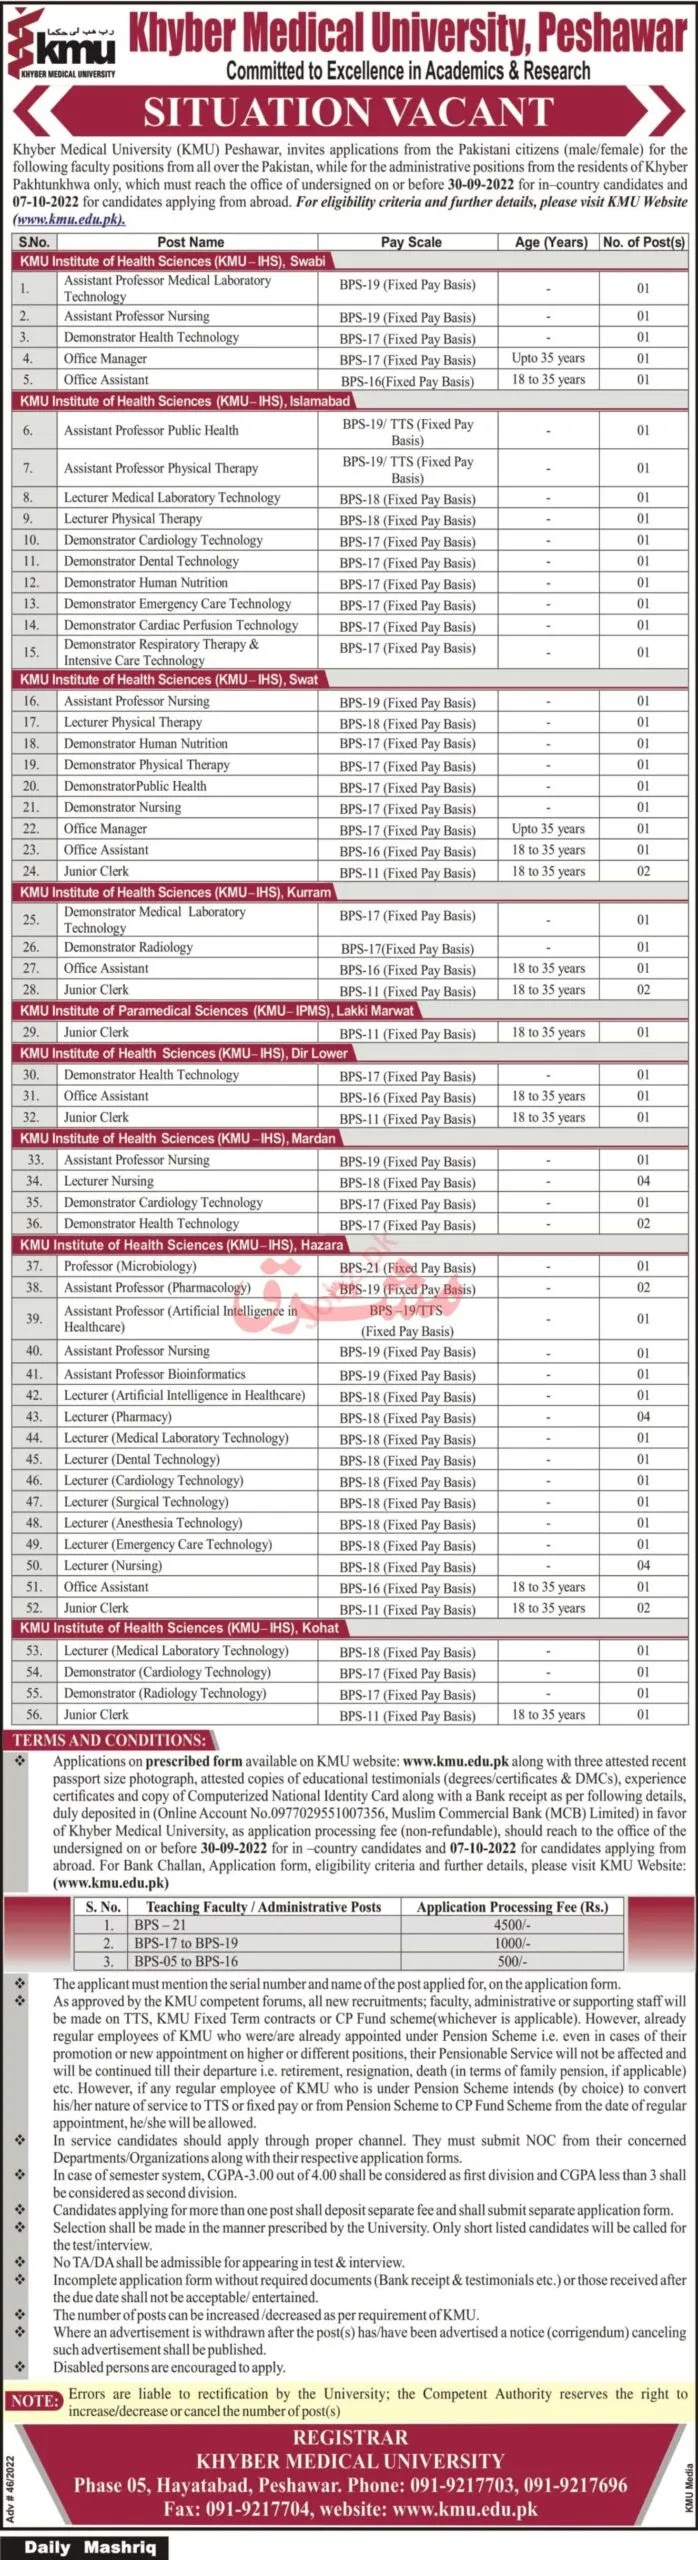 Khyber Medical University Jobs 2022 - KMU Jobs 2022 - www.kmu.edu.pk Jobs 2022